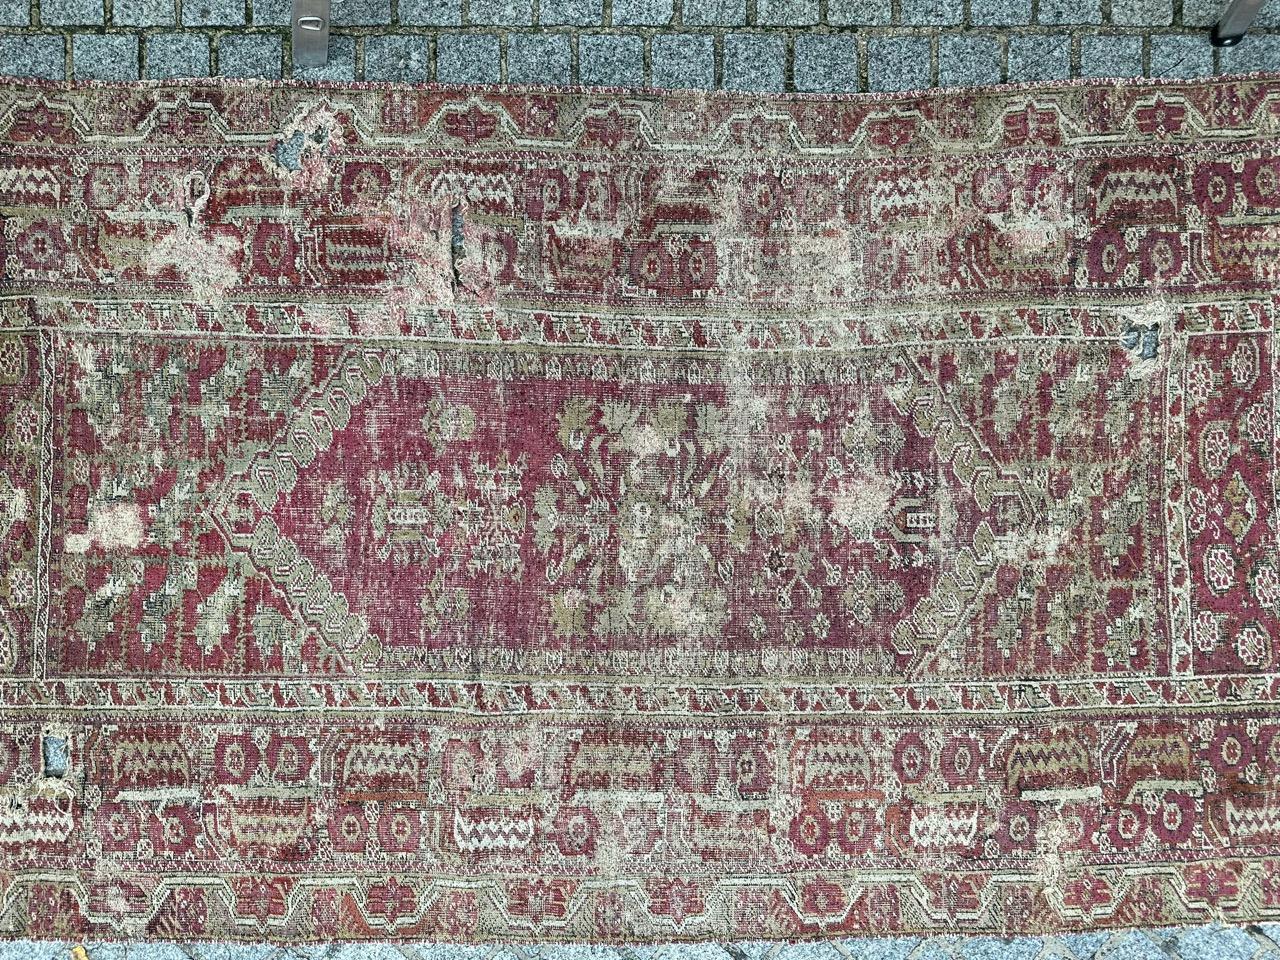 Exquisiter 200 Jahre alter osmanischer Teppich aus der Region Ghyordes in der Türkei. Dieses bemerkenswerte Stück weist komplizierte geometrische und stilisierte Muster auf, mit schönen Naturtönen in Lila und Orange als Hintergrund. Die Bordüre ist